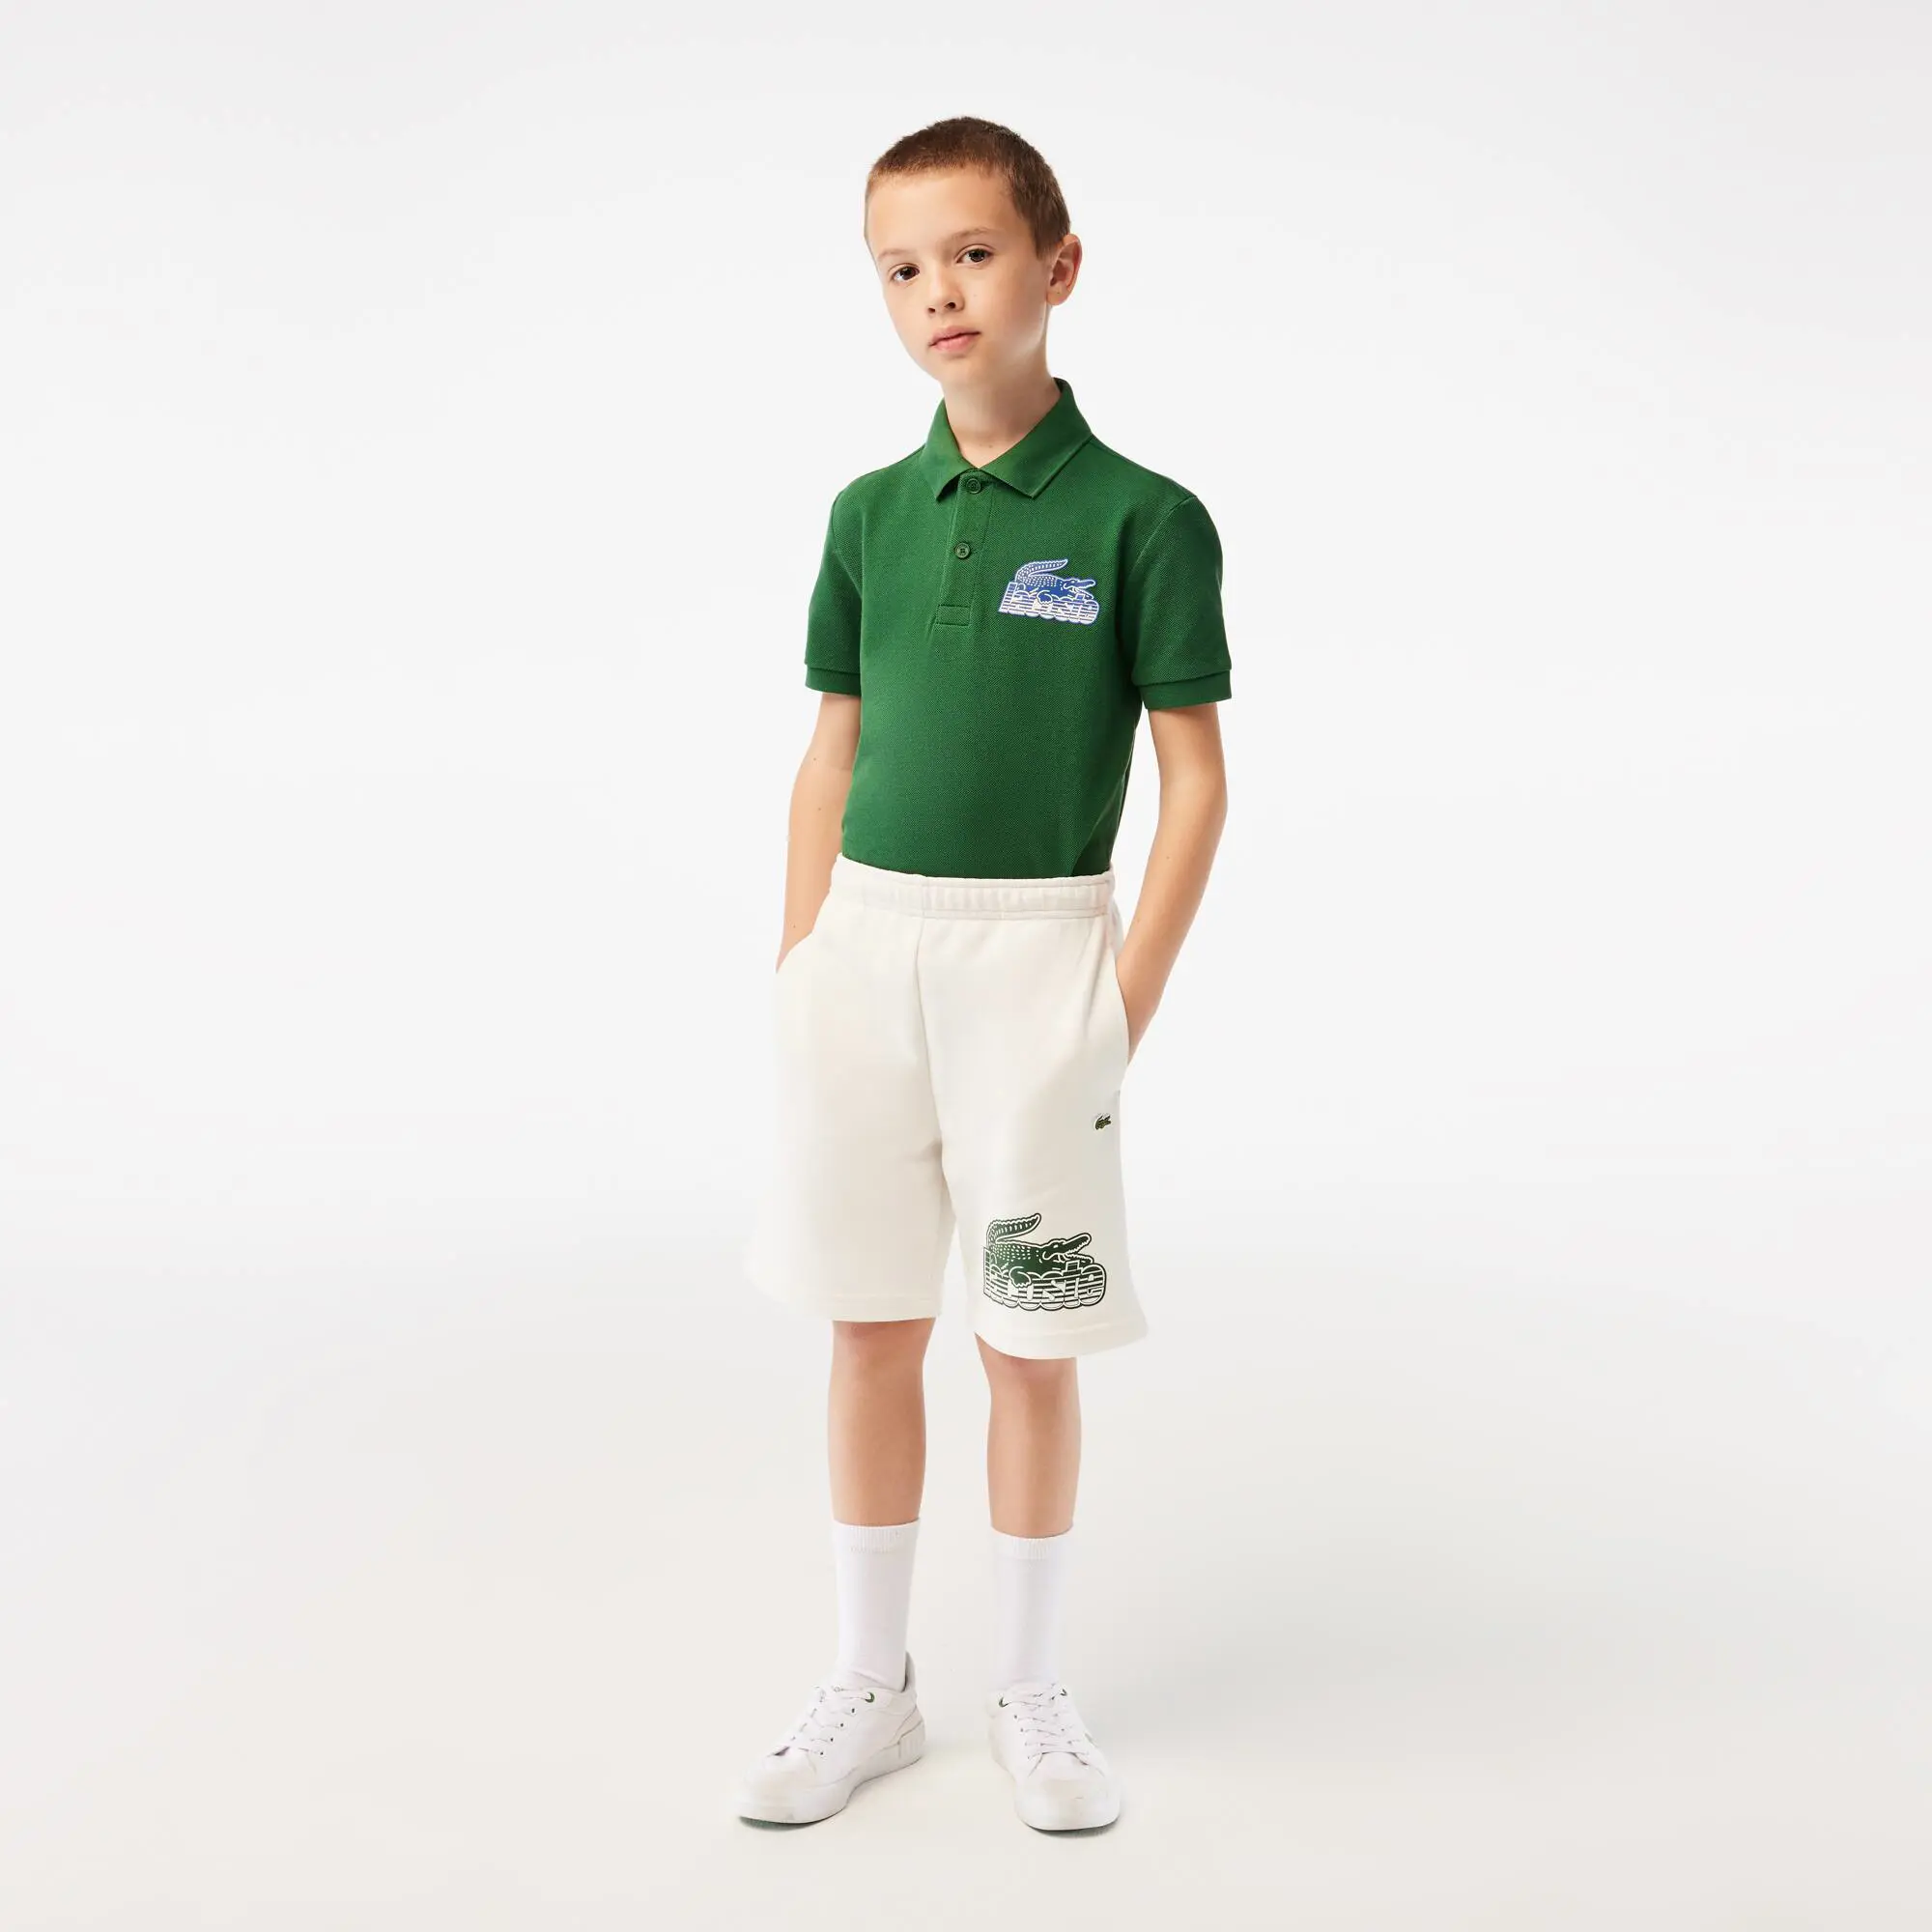 Lacoste Pantaloni corti da bambino con stampa a contrasto con logo Lacoste. 1